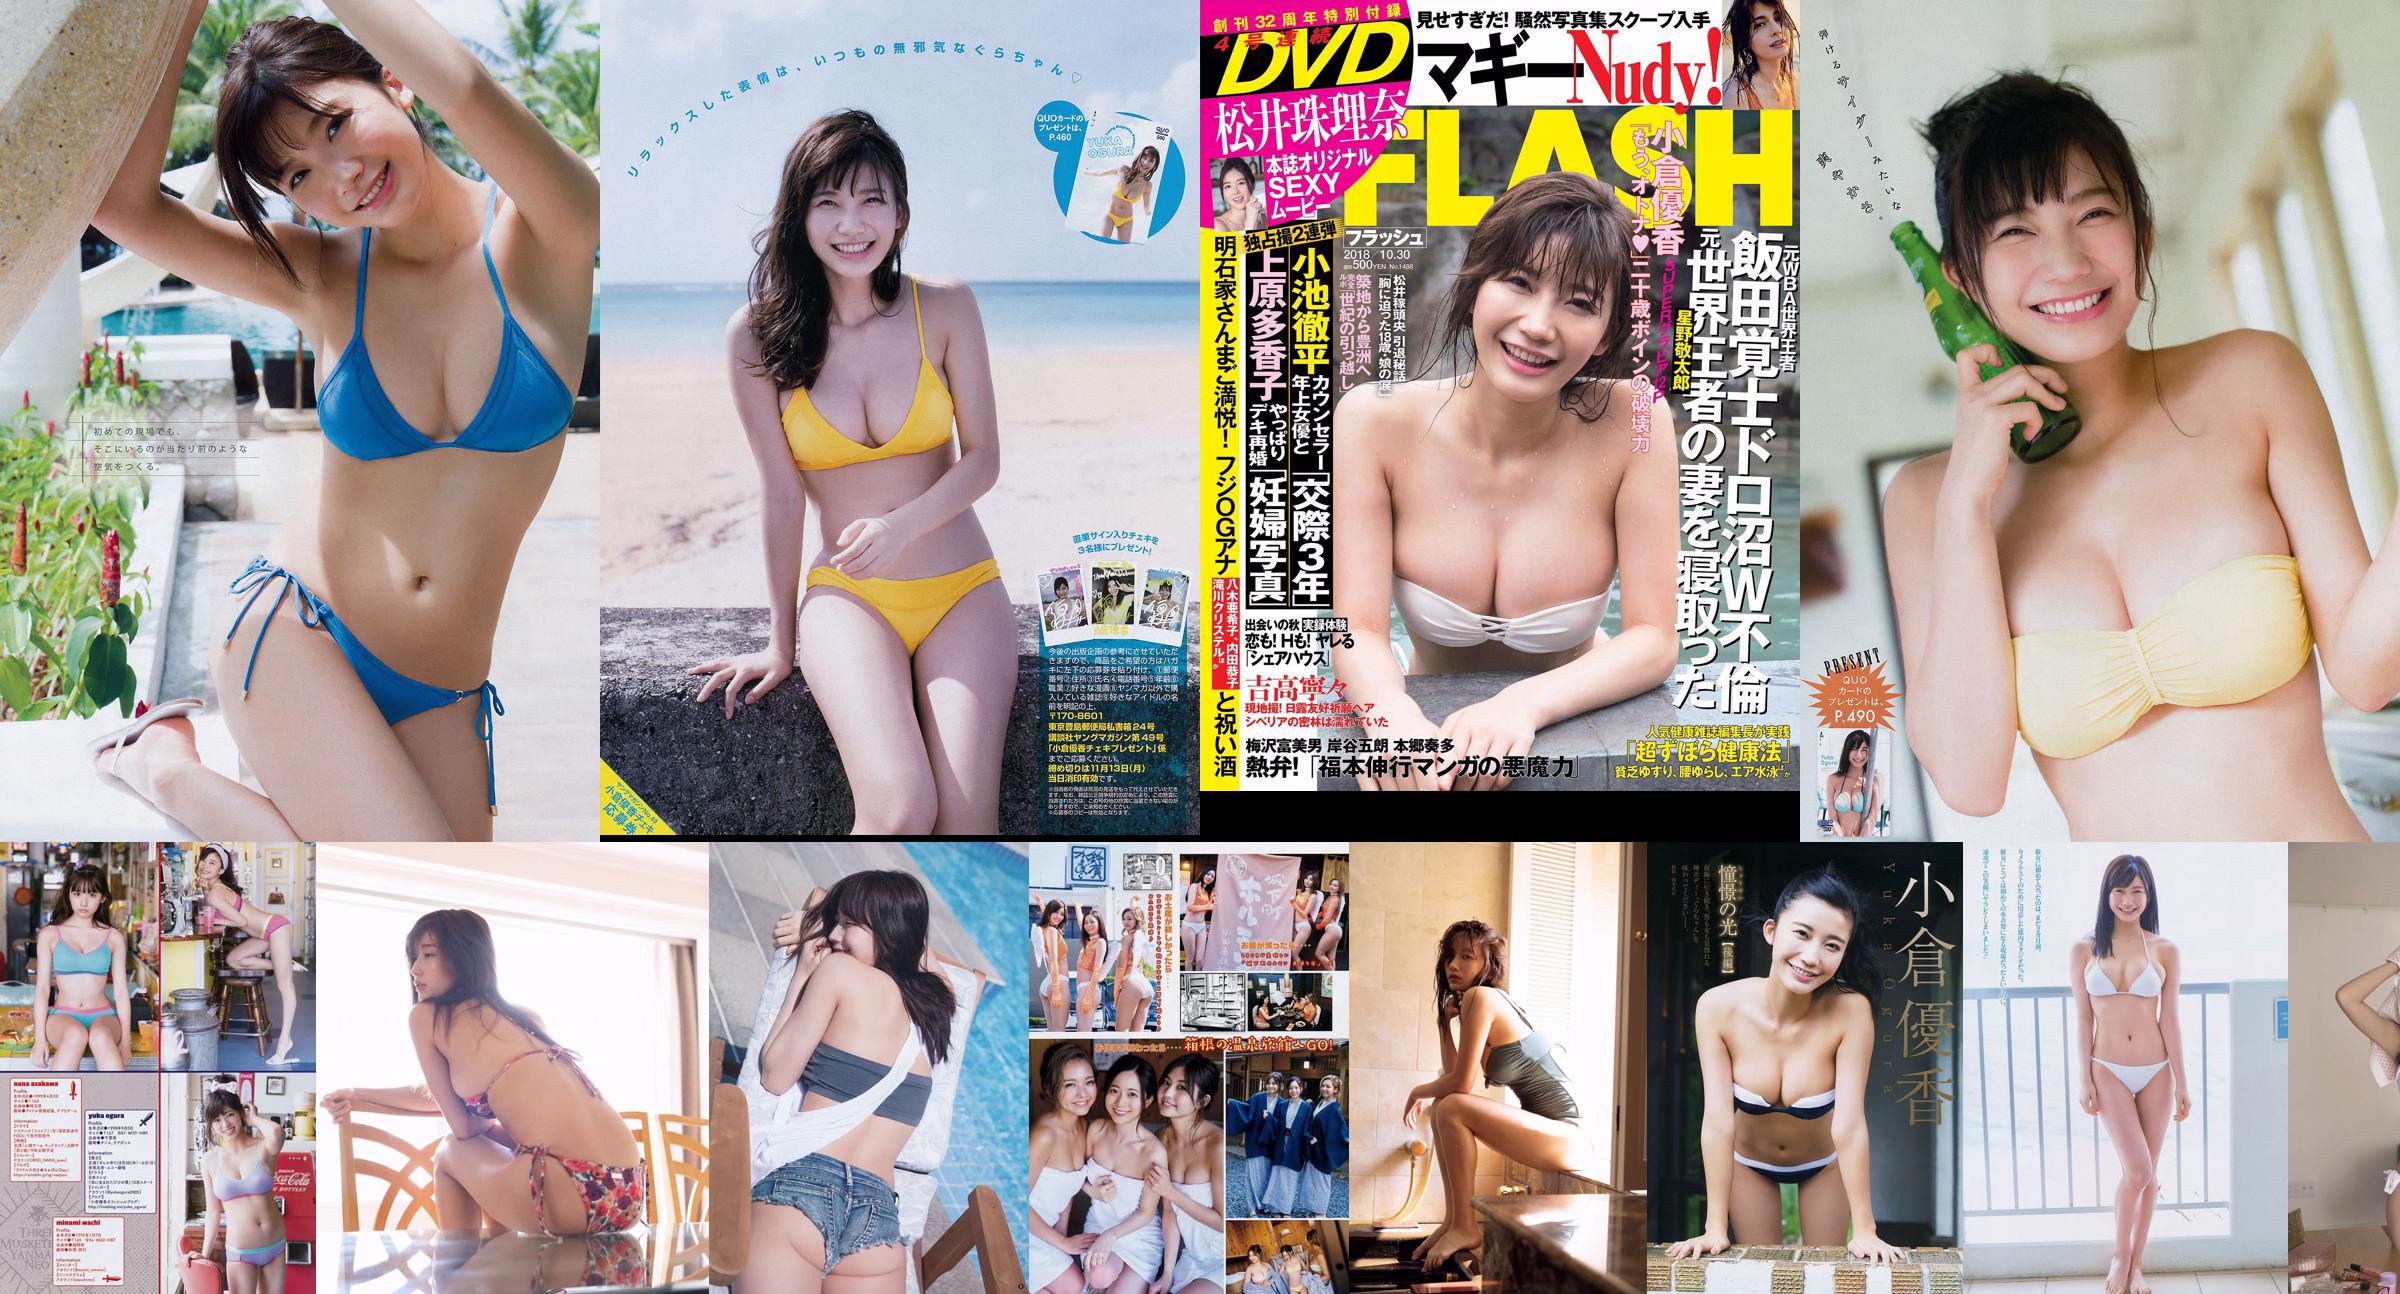 [Young Magazine] Yuka Ogura Nana Minamiguchi 2017 No.41 Photograph No.04b622 Pagina 1